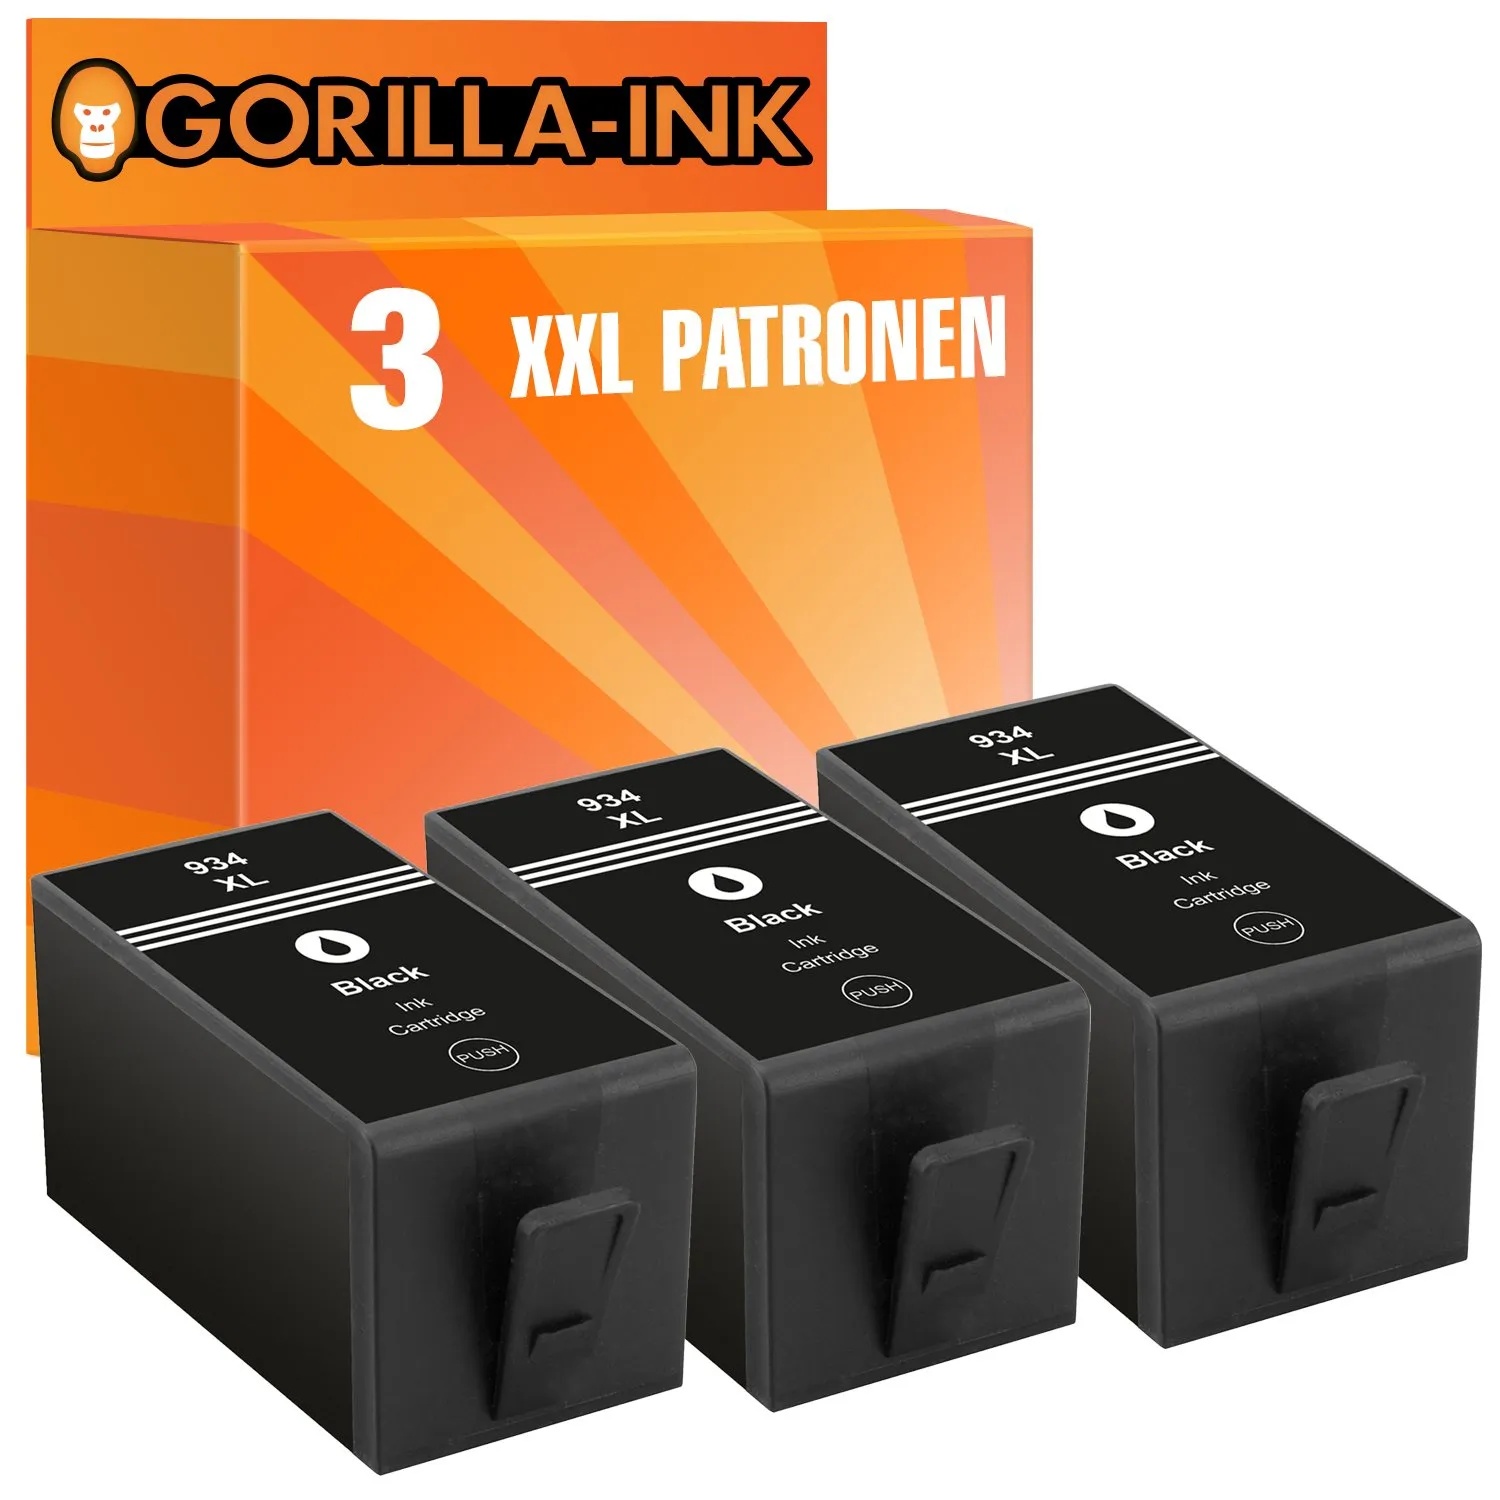 Gorilla-Ink 3X Patrone XXL kompatibel mit HP 934 XL Black | Geeignet für HP OfficeJet 6230 6235 6239 6812 6815 6820 6822 6825 6830 6835